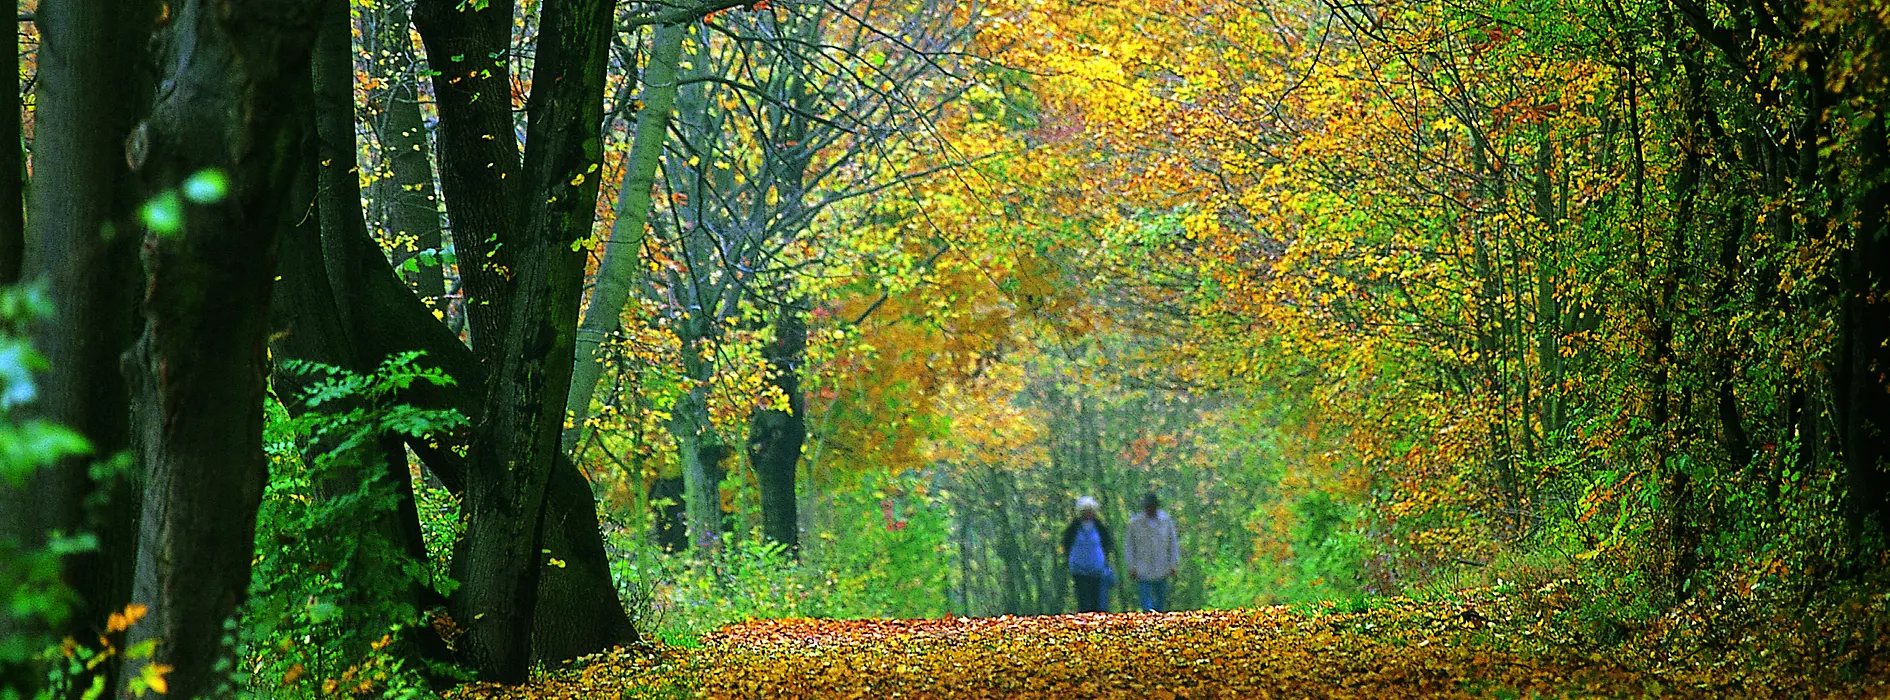 Schwarzenbergpark in fall